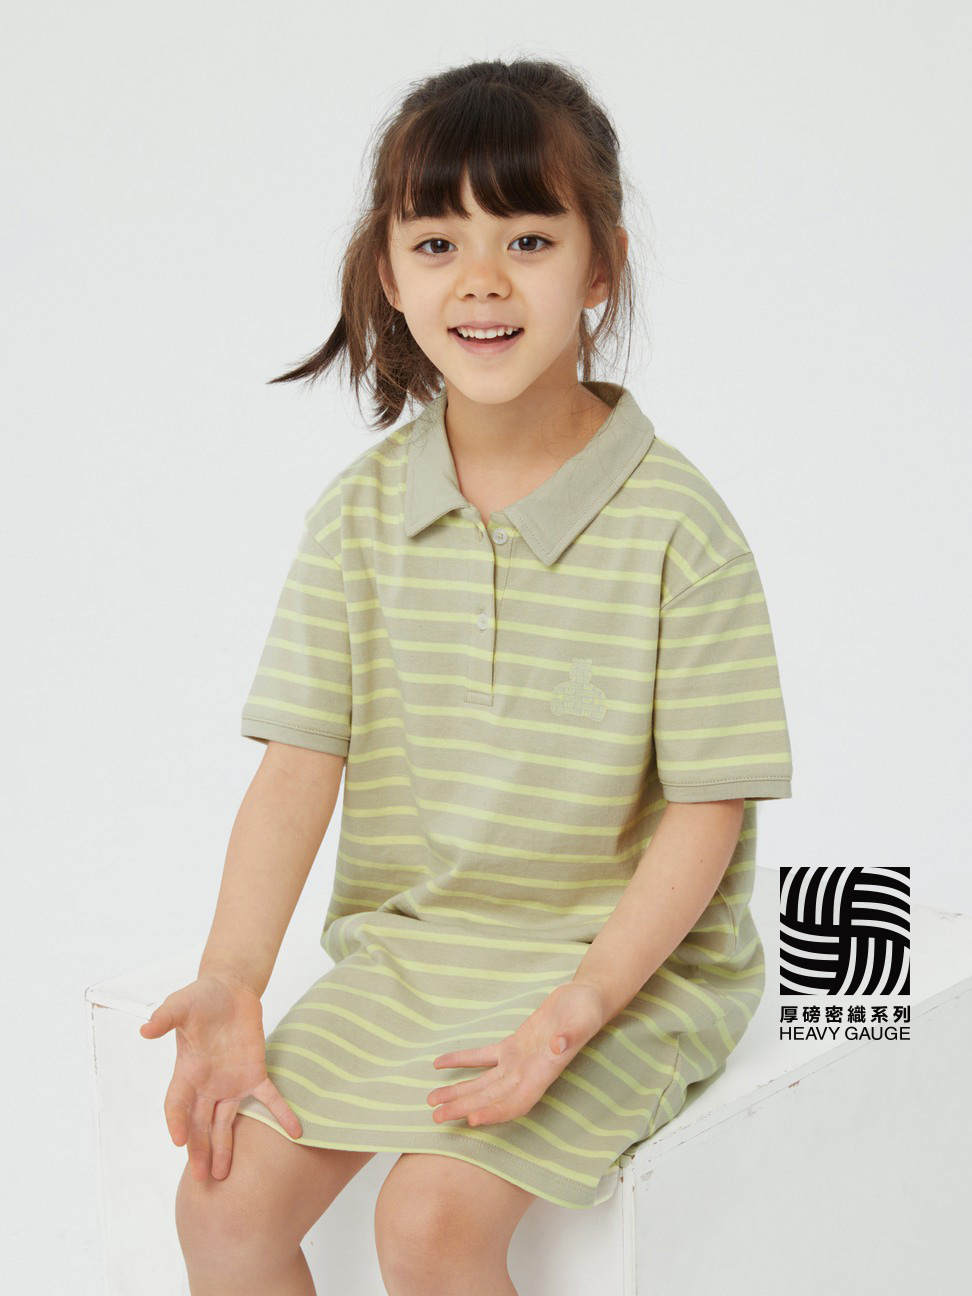 女童裝|Logo小熊短袖洋裝-米黃條紋